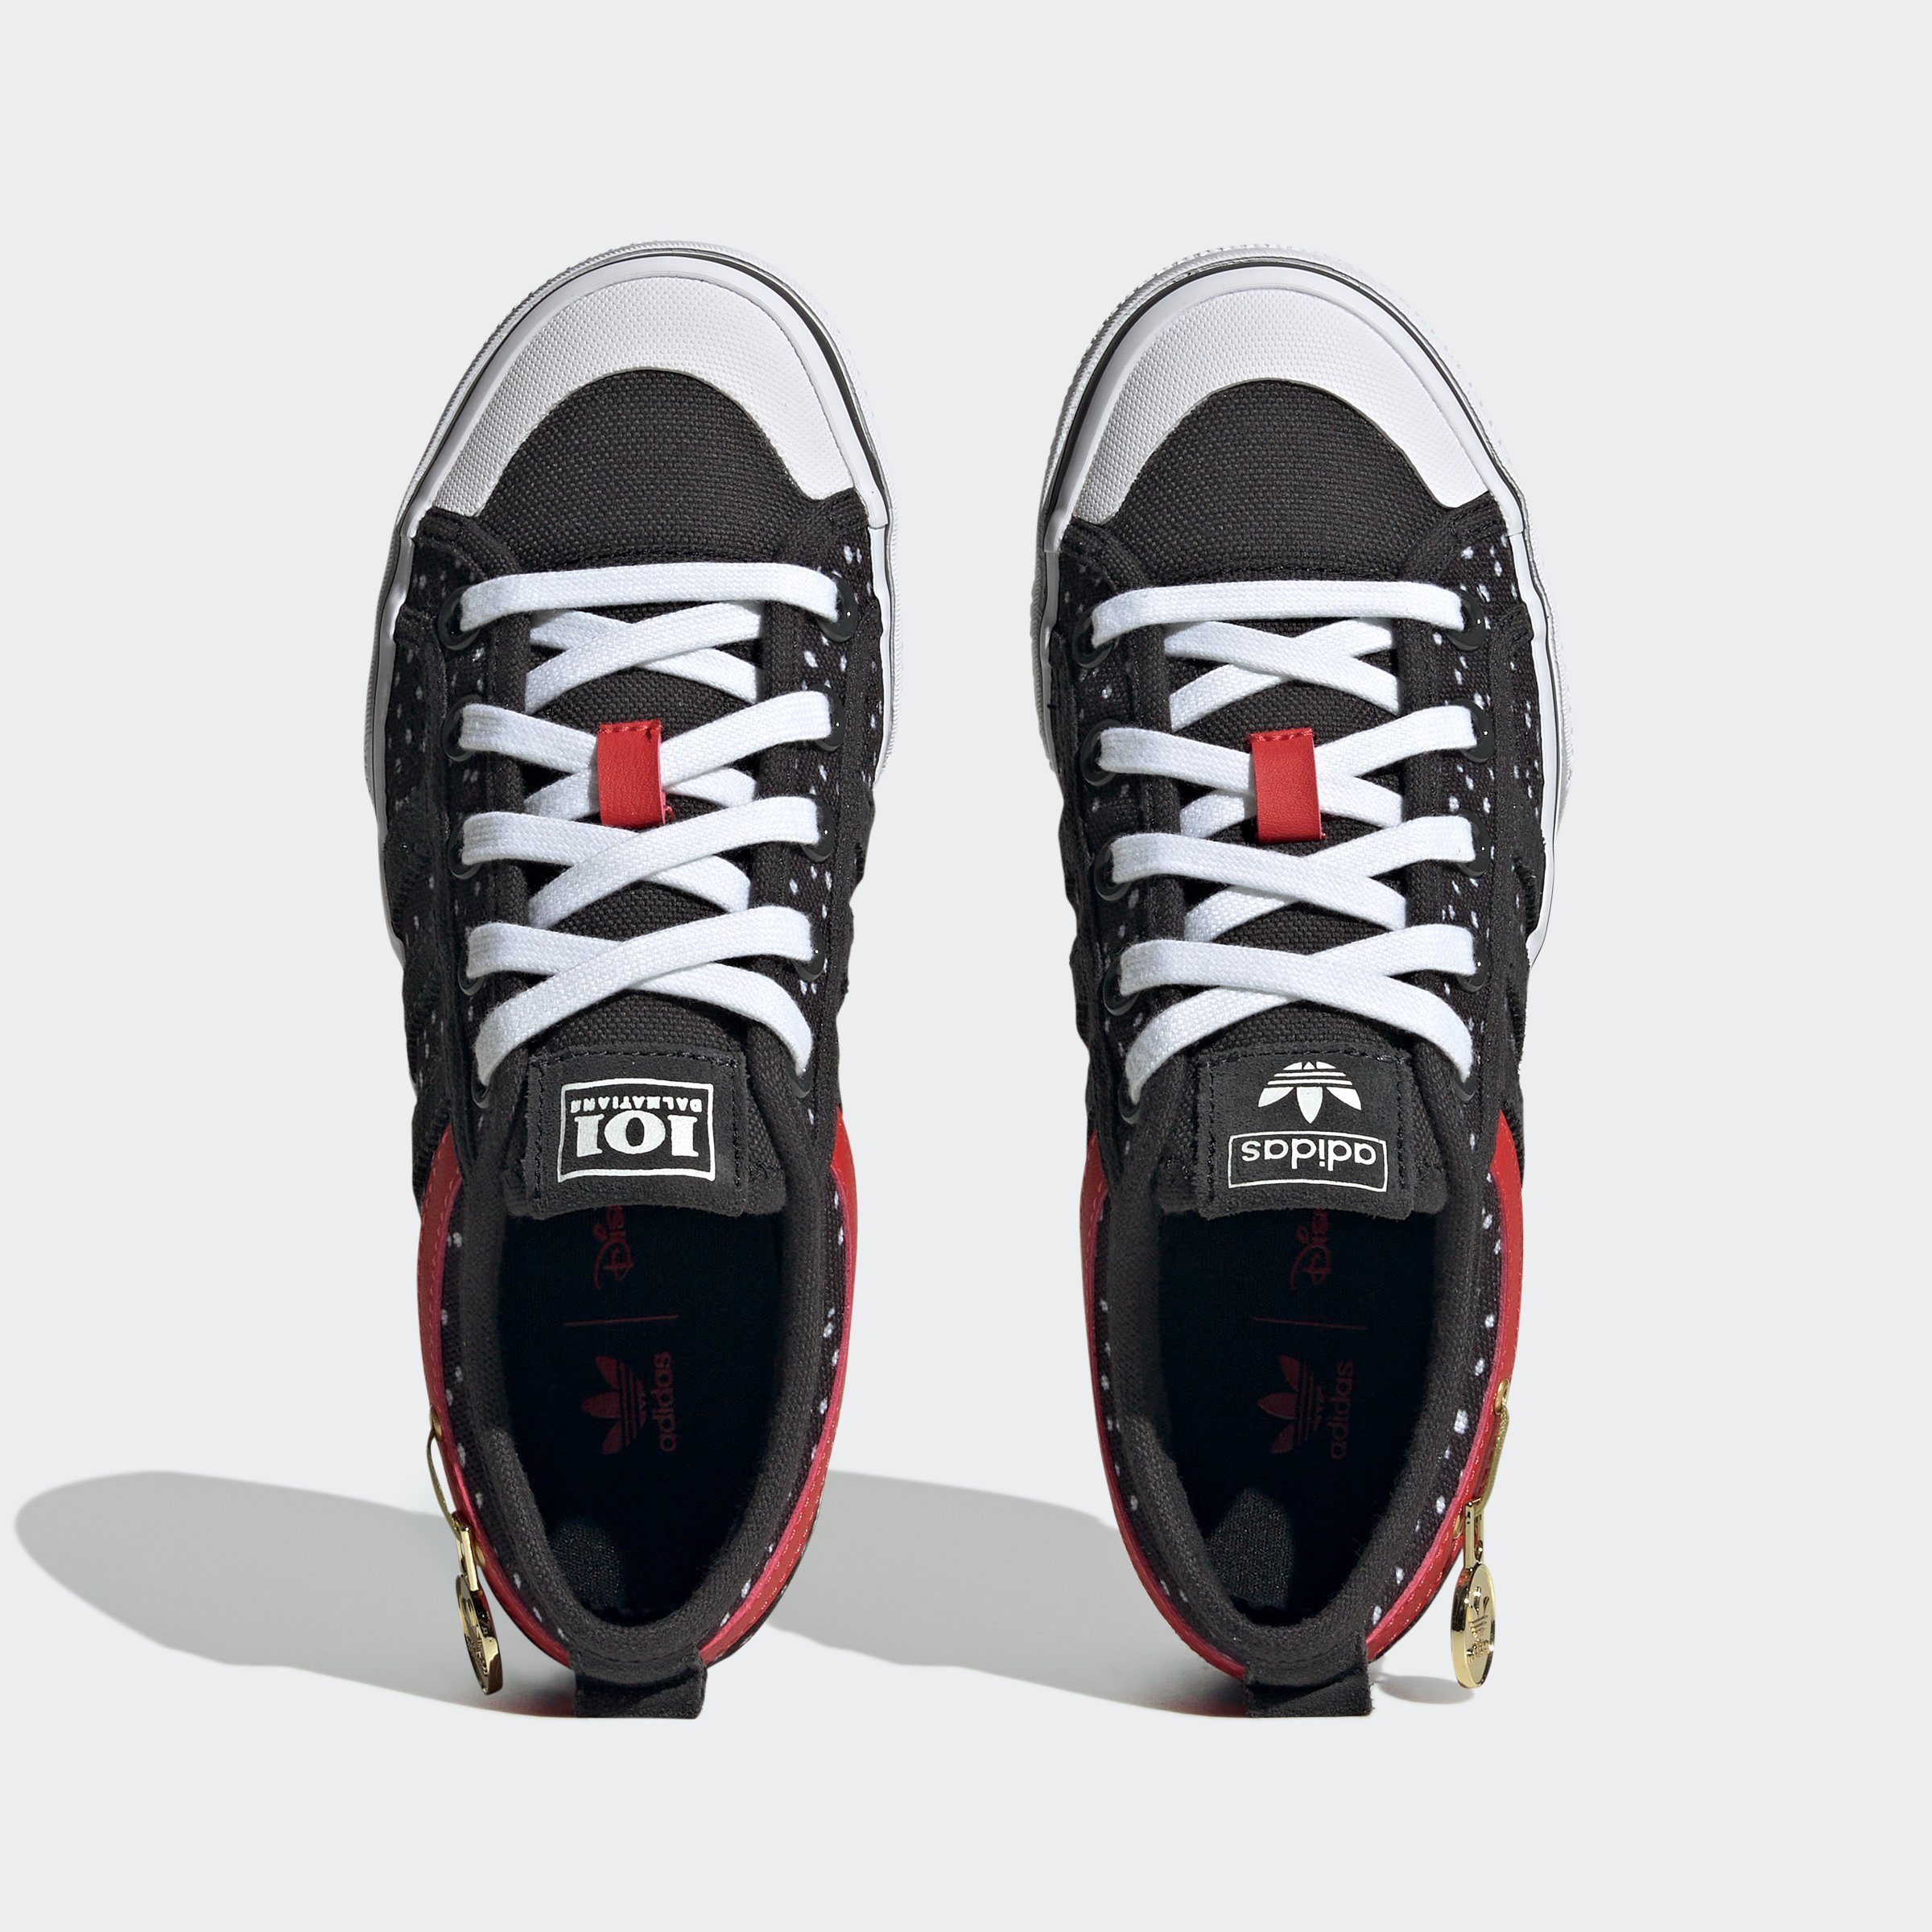 KIDS NIZZA Originals Sneaker PLATFORM DISNEY ADIDAS X 101 DALMATINER adidas ORIGINALS